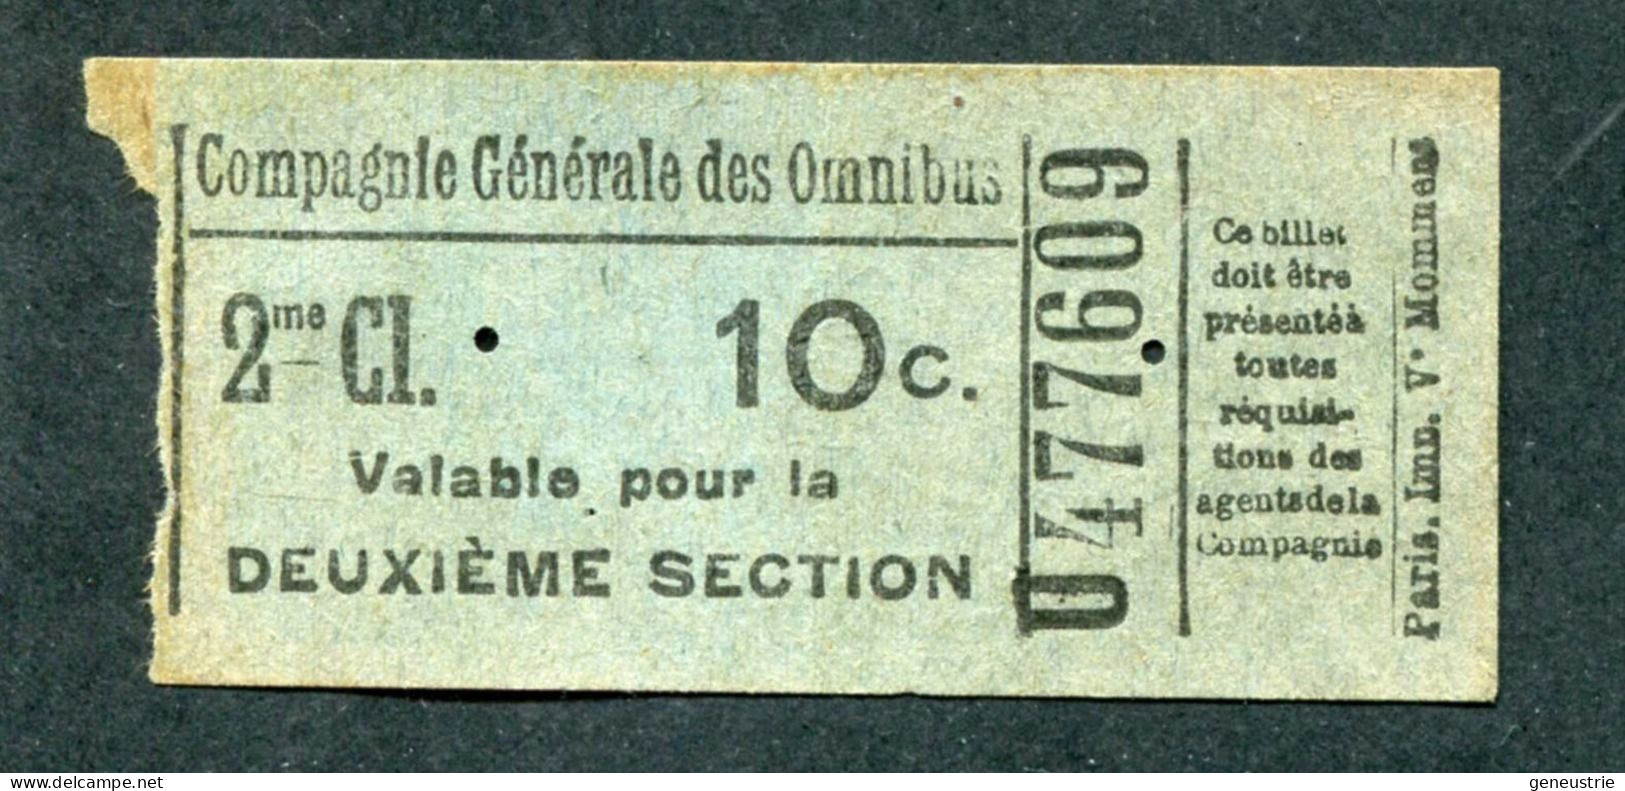 Ticket De Tramways Parisiens (avant 1921) Compagnie Générale Des Omnibus (CGO) 2e Classe 10c - Paris" Tramway - Tram - Europa